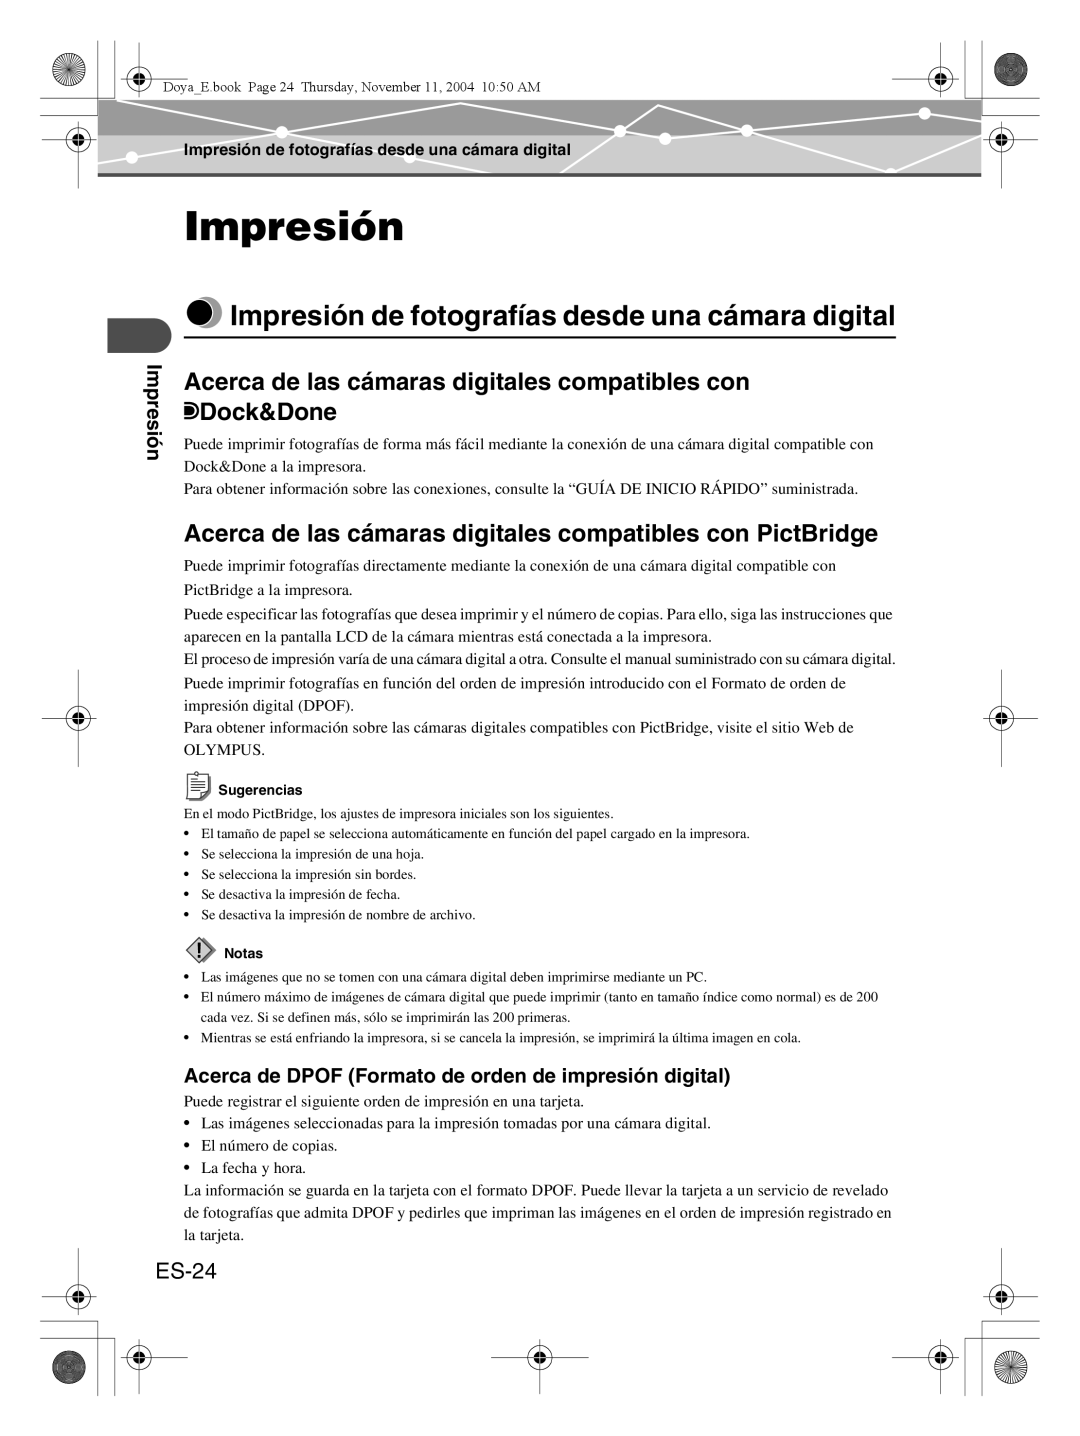 Olympus P-S100 user manual Impresión de fotografías desde una cámara digital, ES-24 